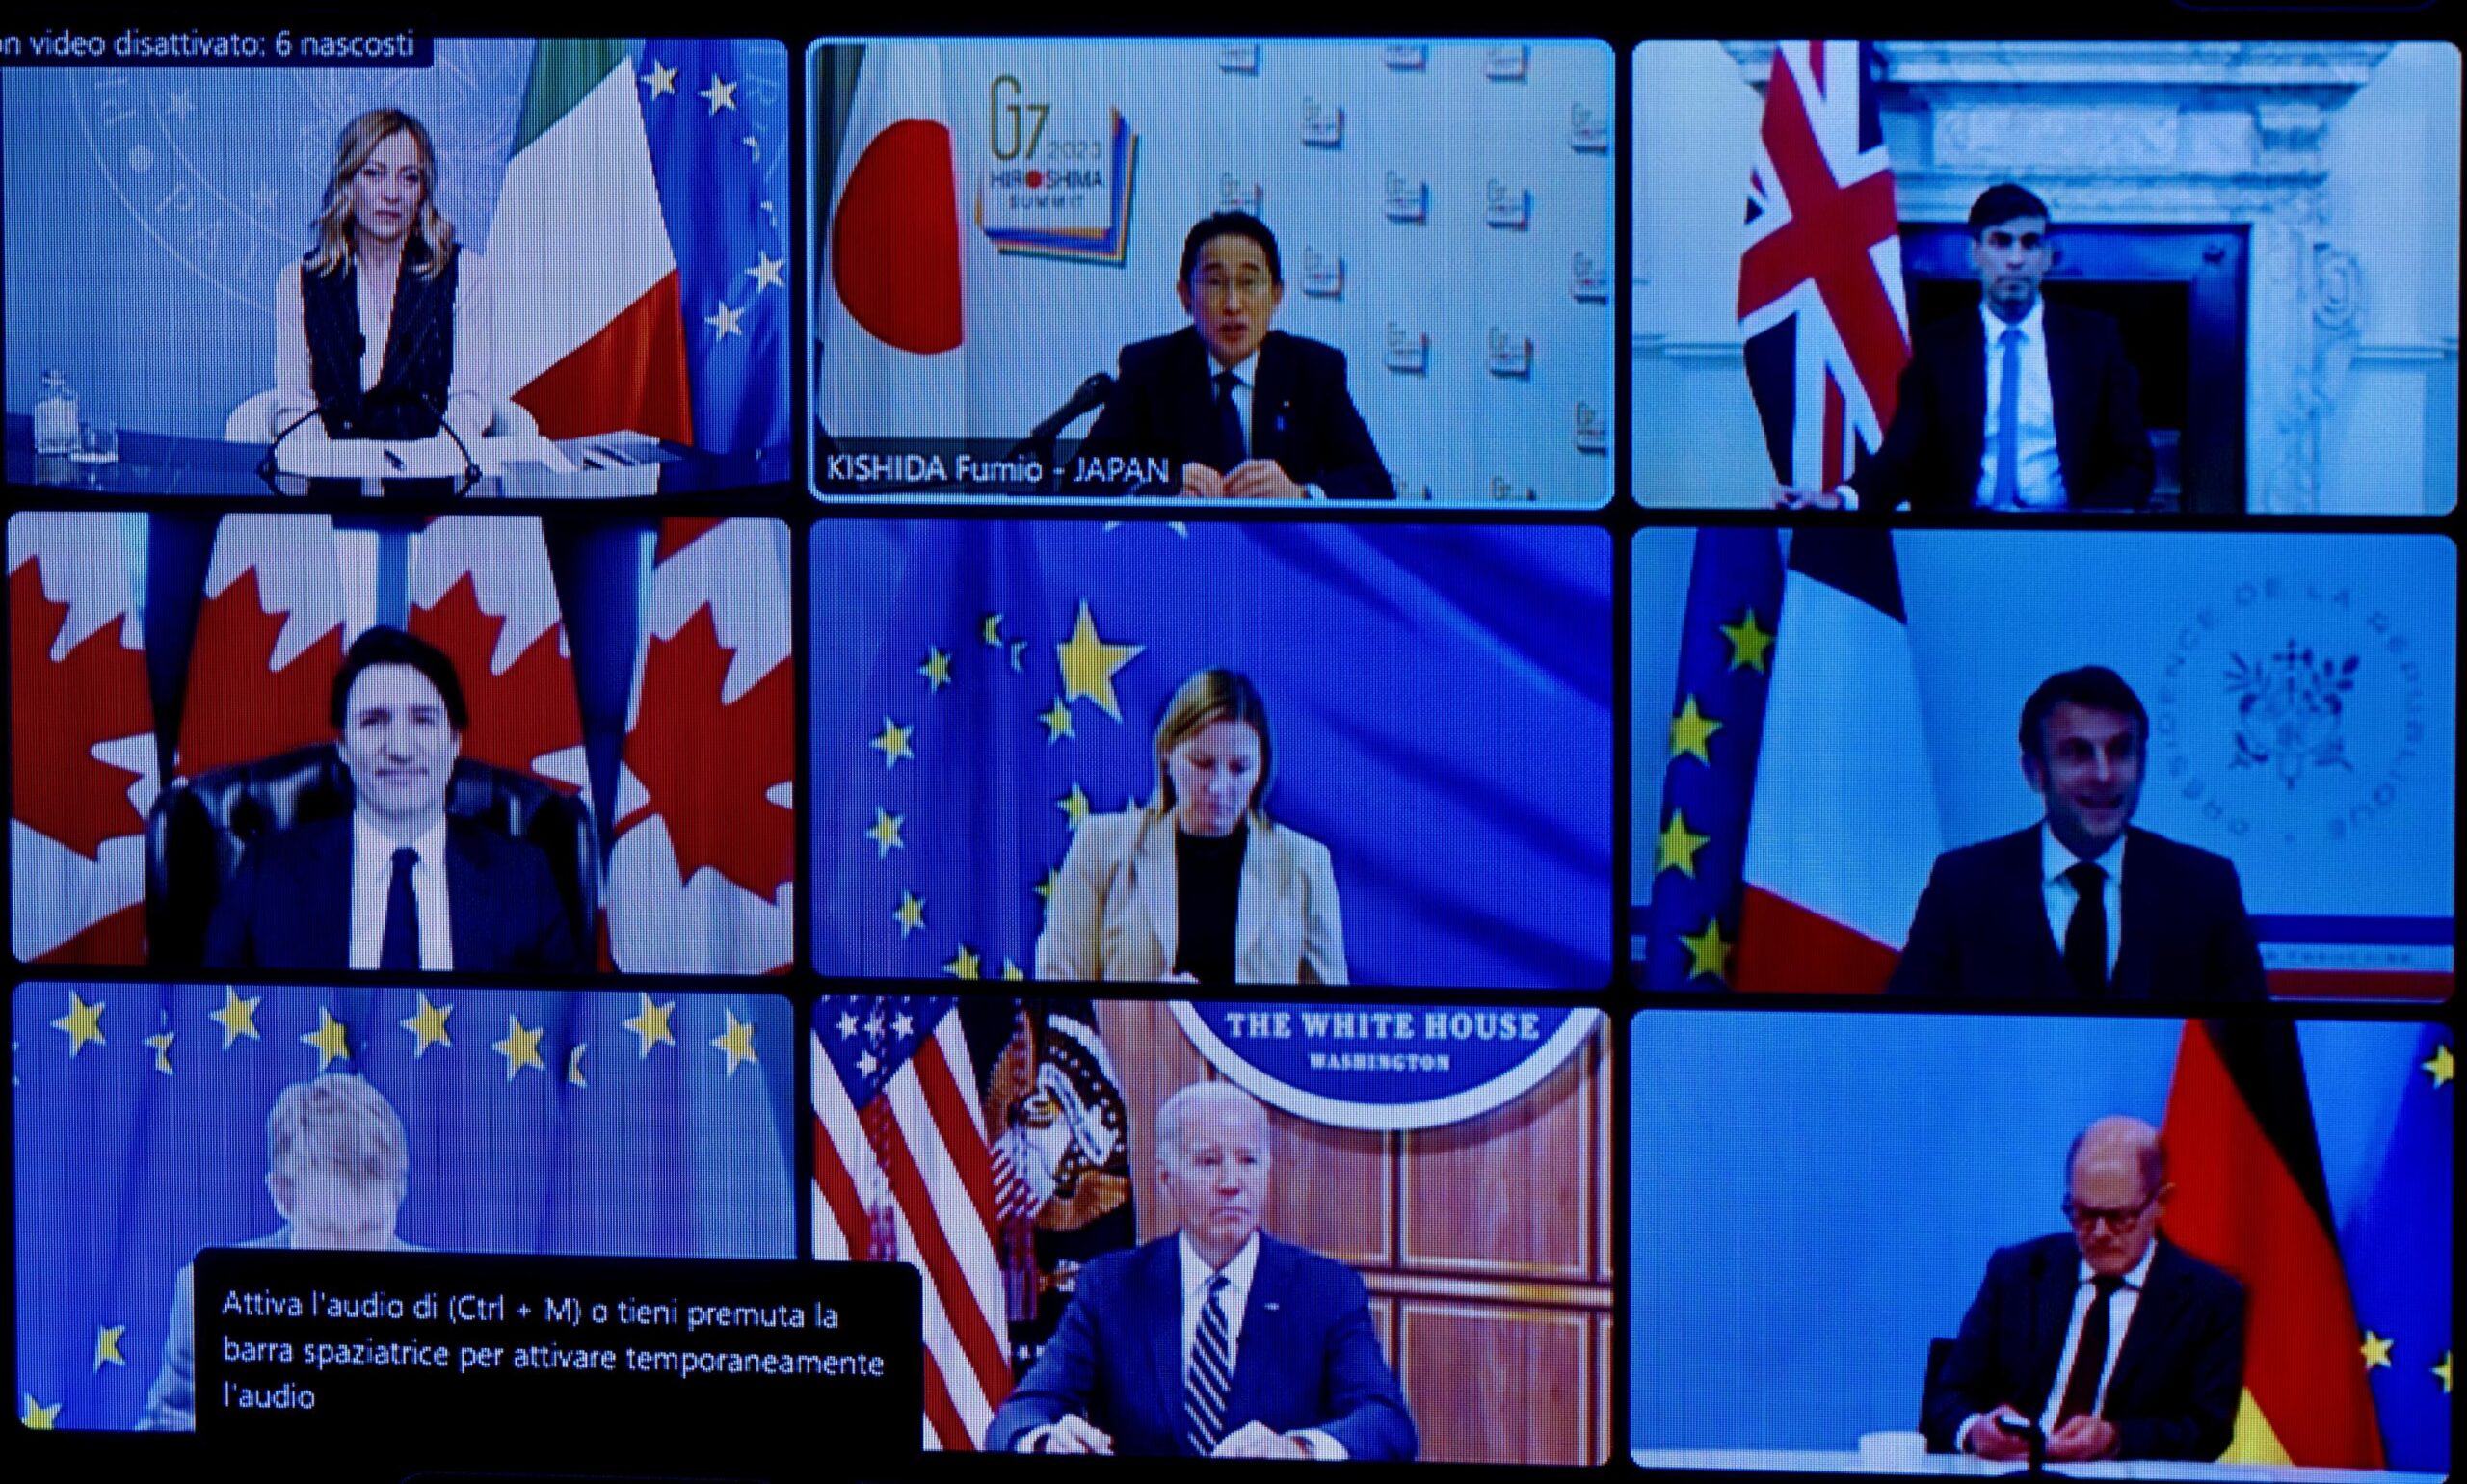 La presidente del Consiglio, Giorgia Meloni, partecipa alla videoconferenza conclusiva della Presidenza giapponese del G7, Roma, 6 dicembre 2023. ANSA/FILIPPO ATTILI/US PALAZZO CHIGI +++ NO SALES, EDITORIAL USE ONLY +++ NPK +++